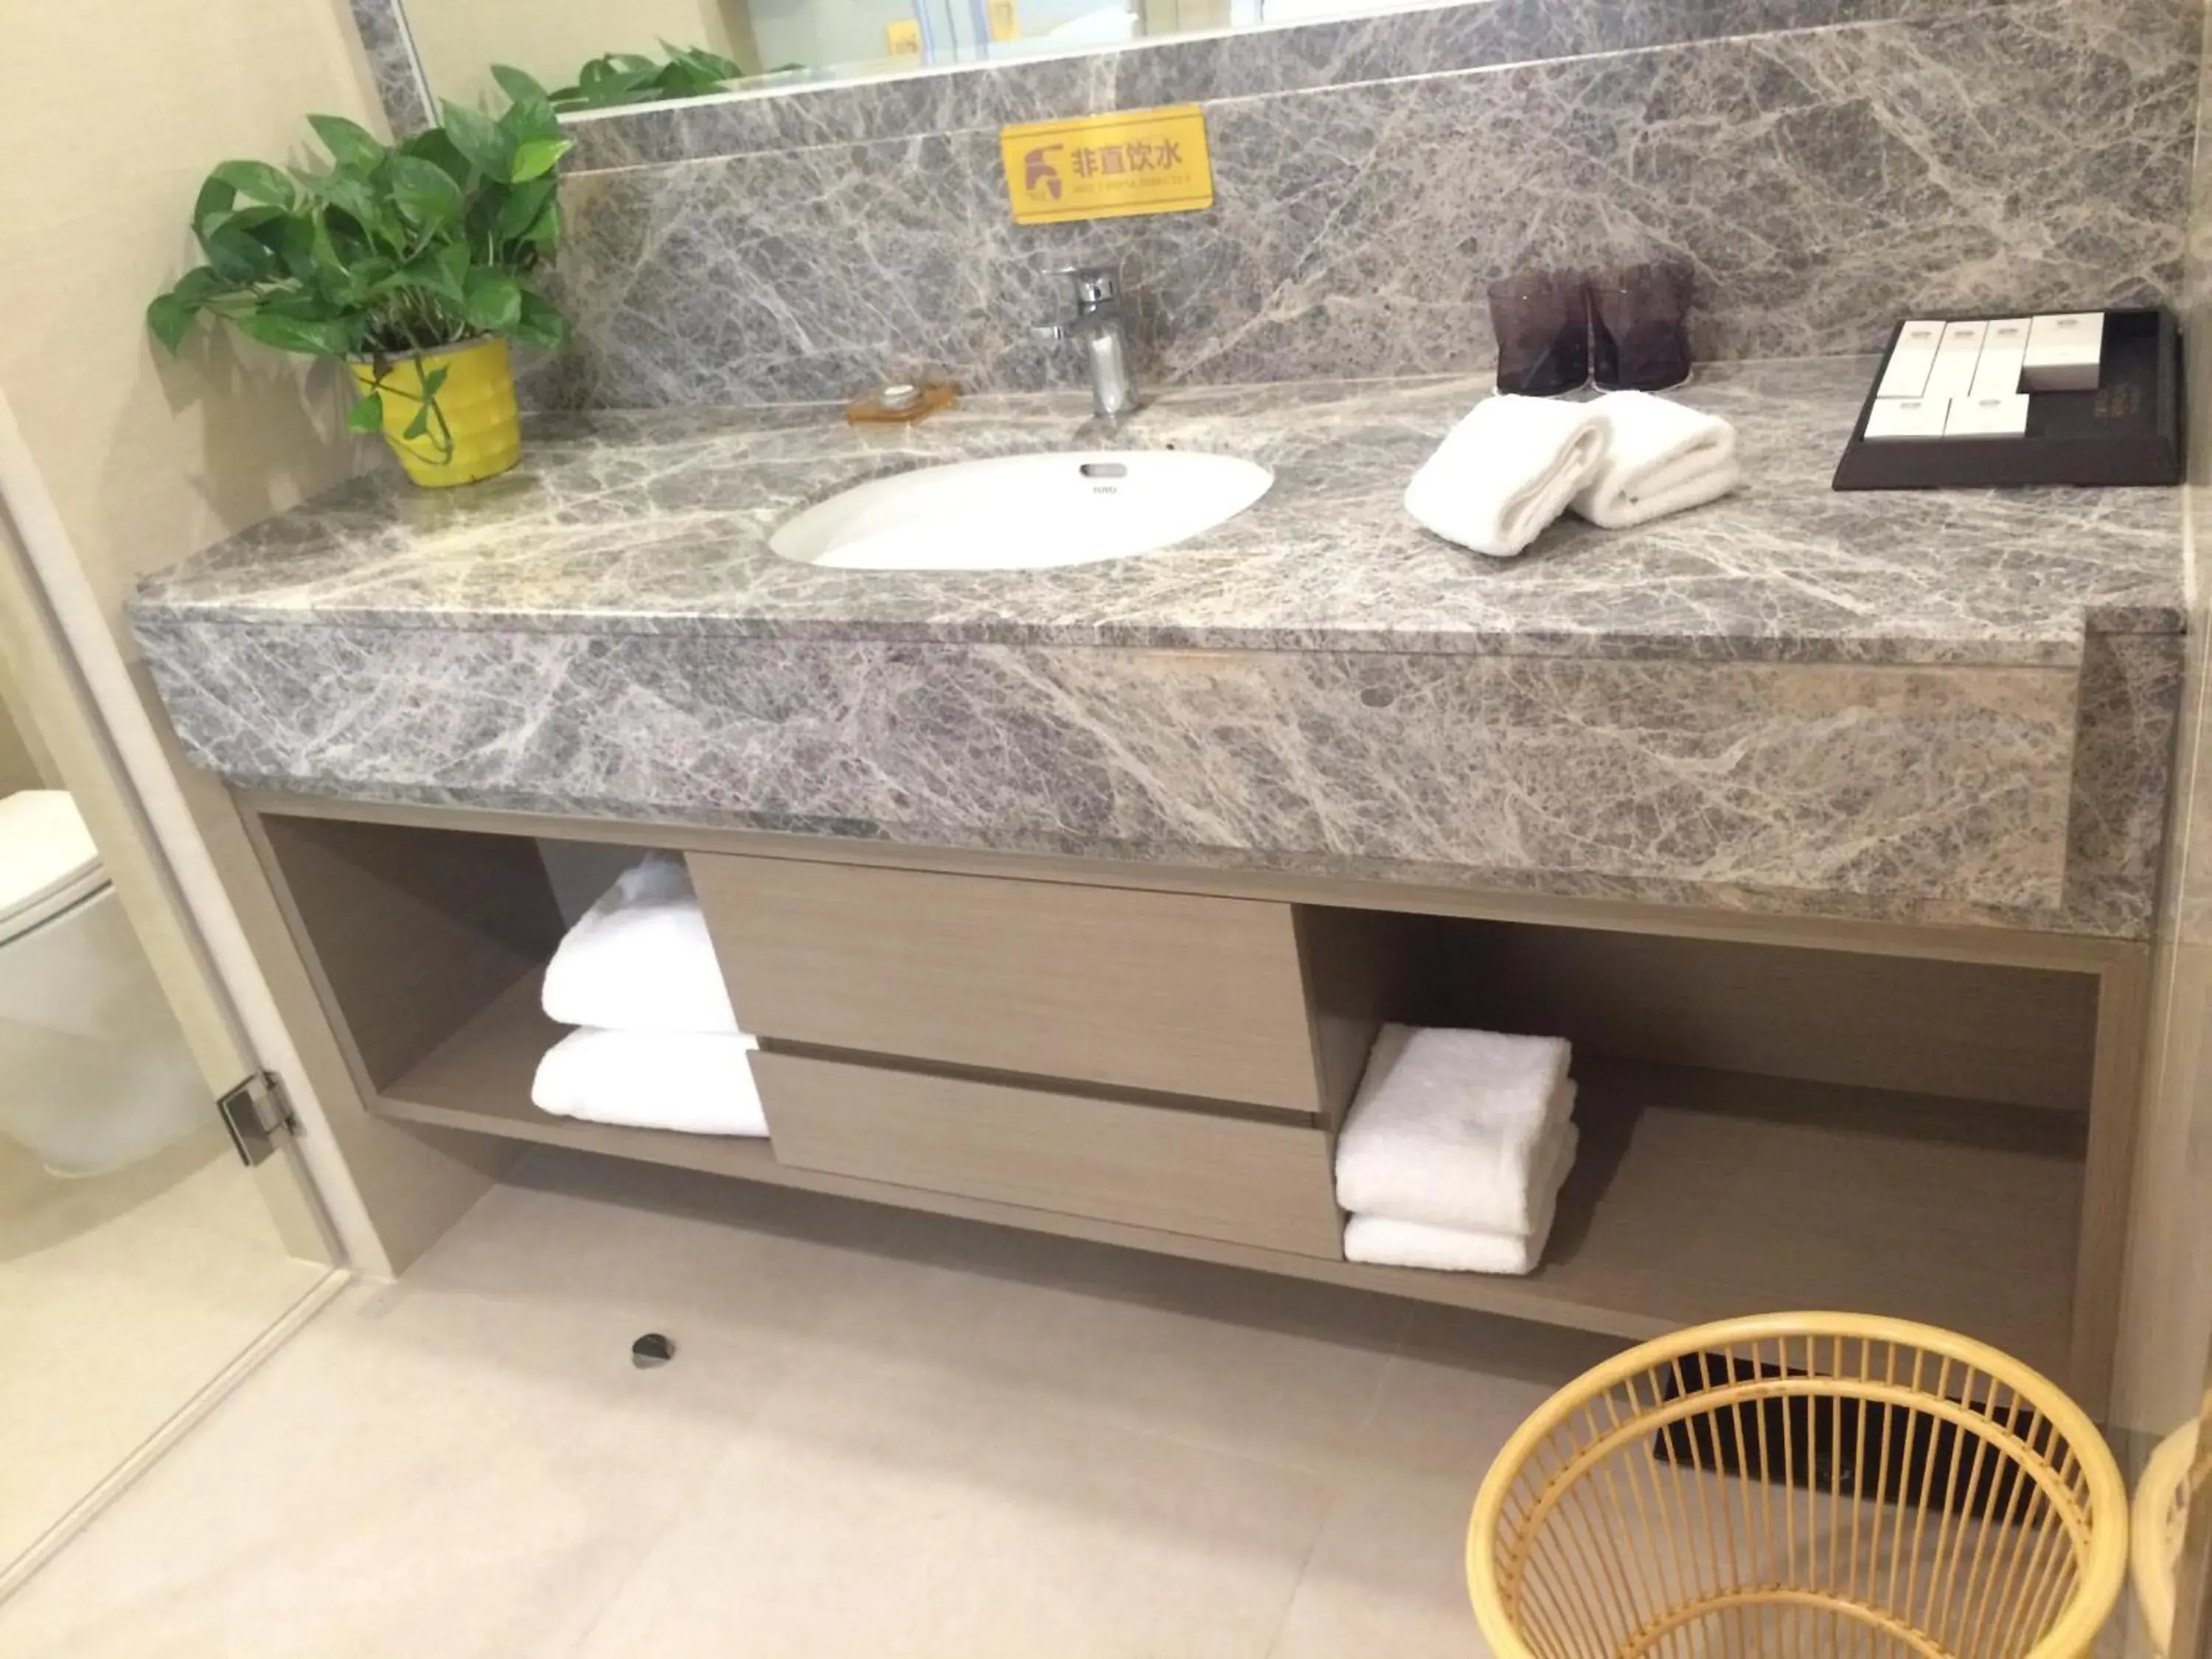 Bathroom in Shenzhen Baoan PLUS Gems Cube Hotel                                                             